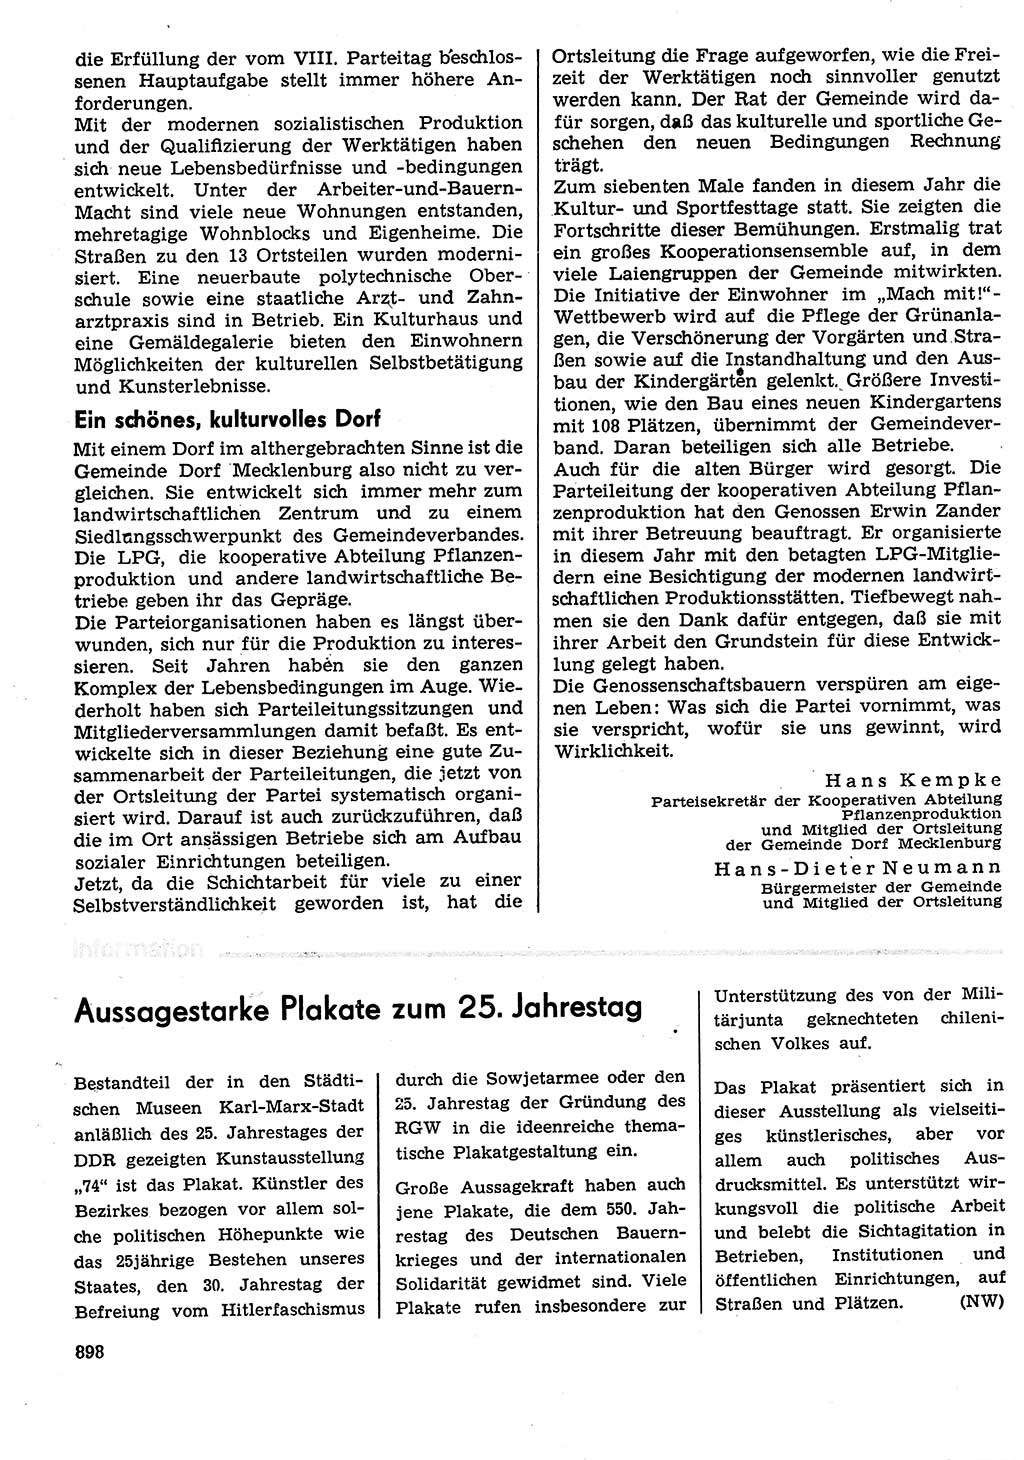 Neuer Weg (NW), Organ des Zentralkomitees (ZK) der SED (Sozialistische Einheitspartei Deutschlands) für Fragen des Parteilebens, 29. Jahrgang [Deutsche Demokratische Republik (DDR)] 1974, Seite 898 (NW ZK SED DDR 1974, S. 898)